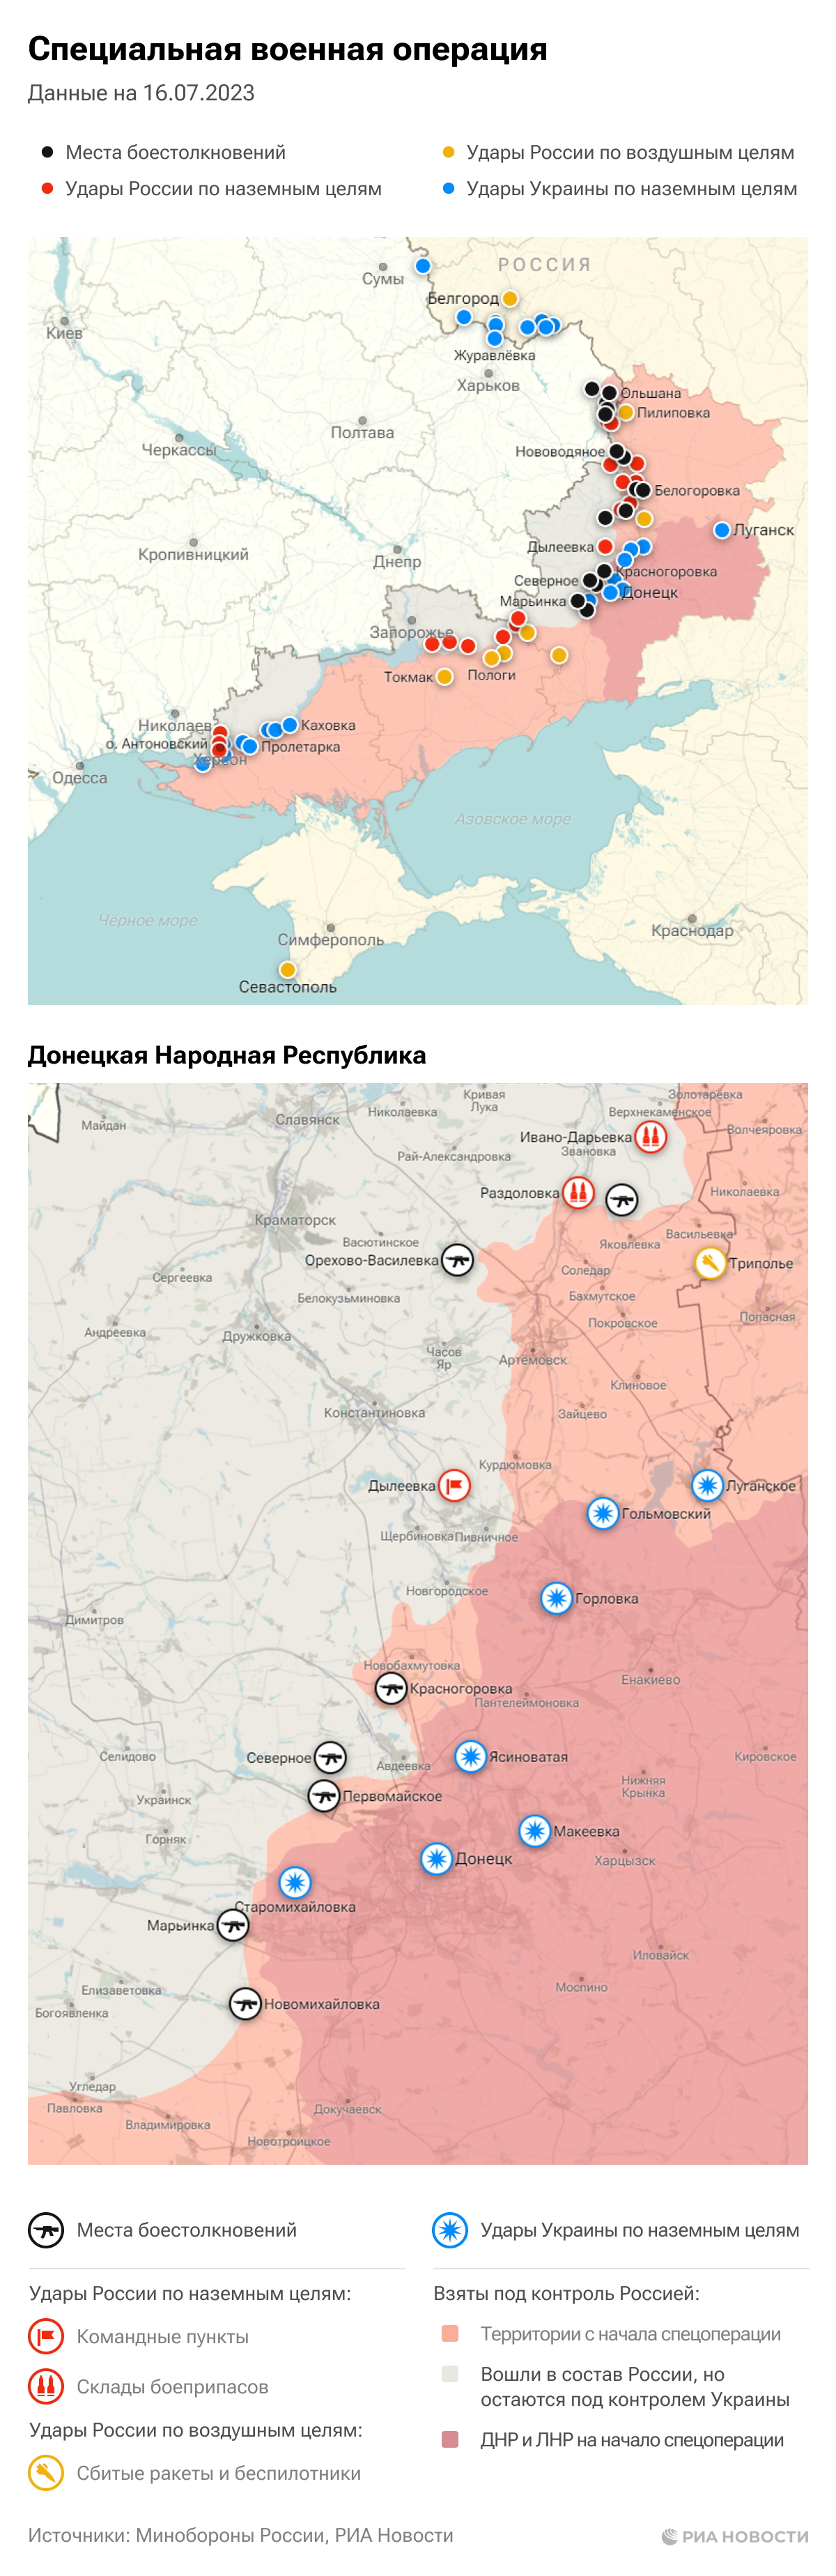 Карта спецоперации Вооруженных сил России на Украине на 16.07.2023